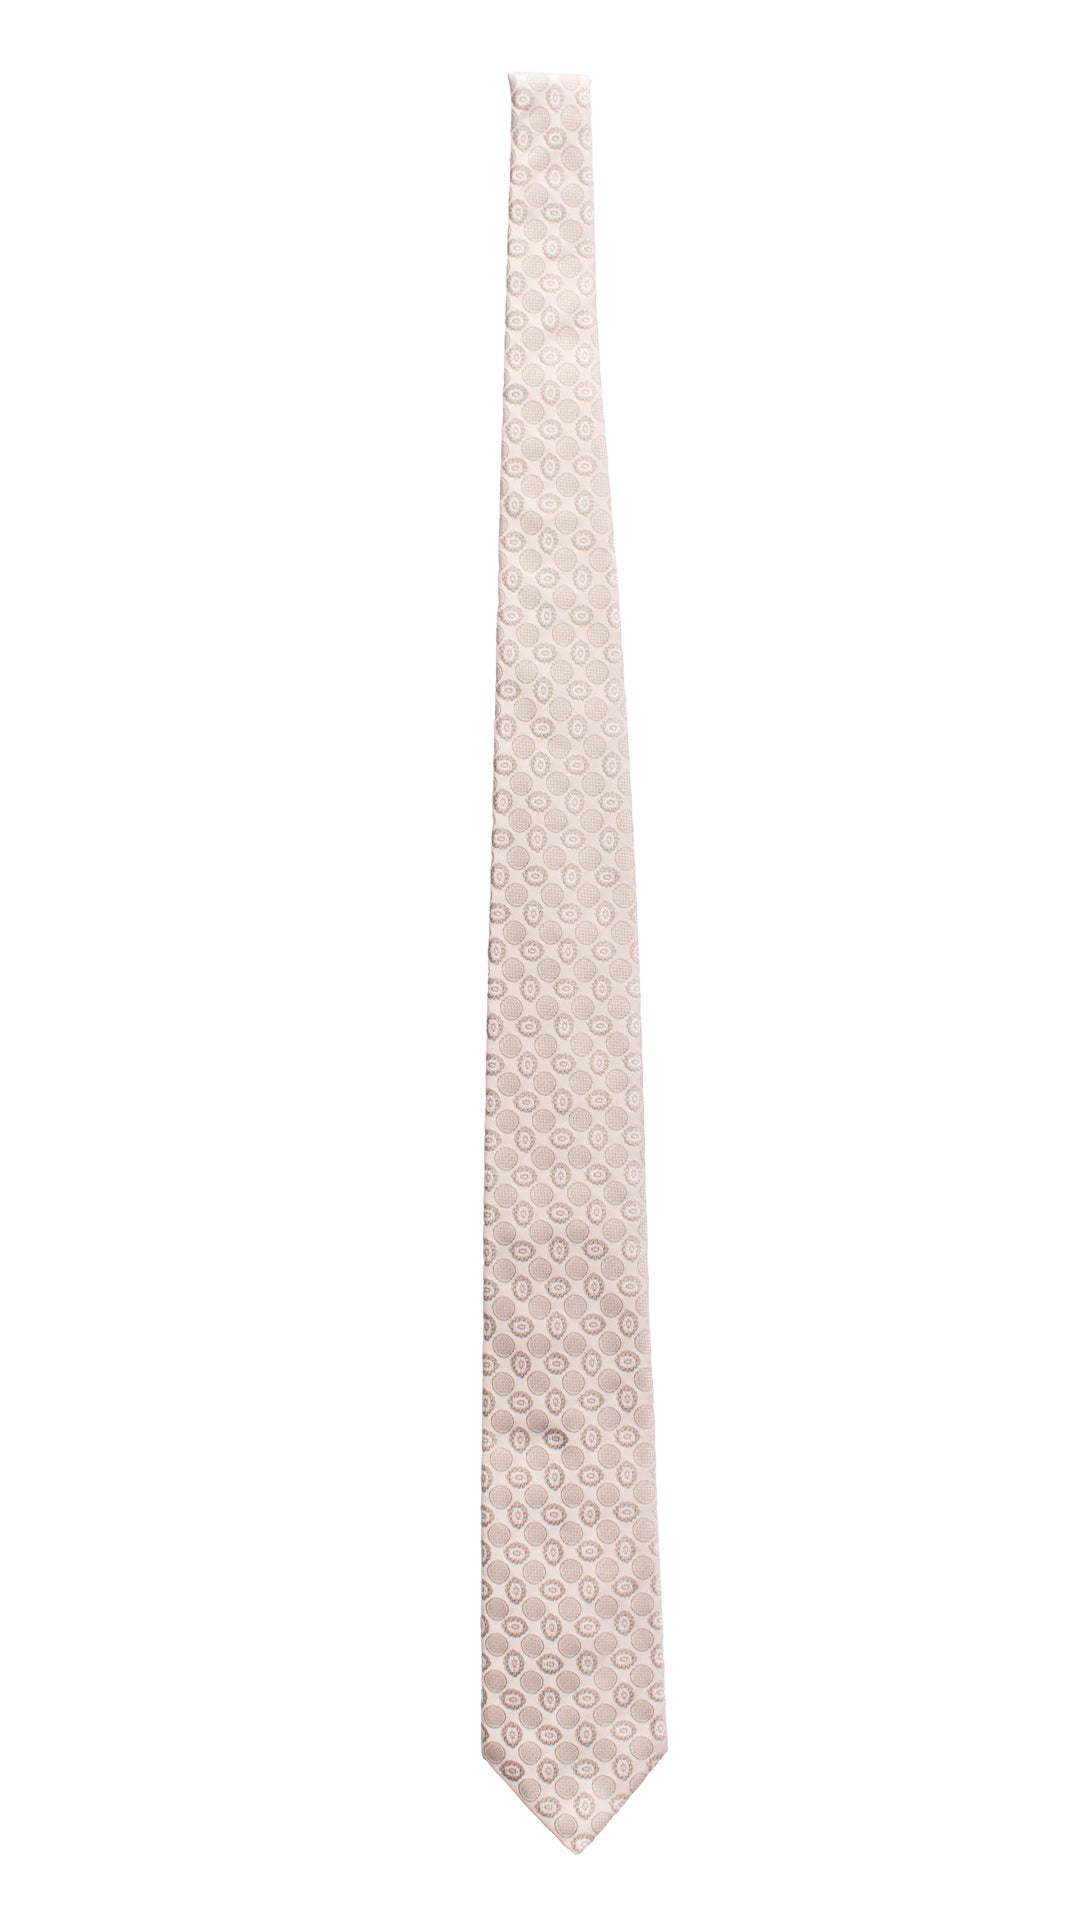 Cravatta da Cerimonia di Seta Grigio Argento Fantasia Tono su Tono Made in italy Graffeo Cravatte Intera